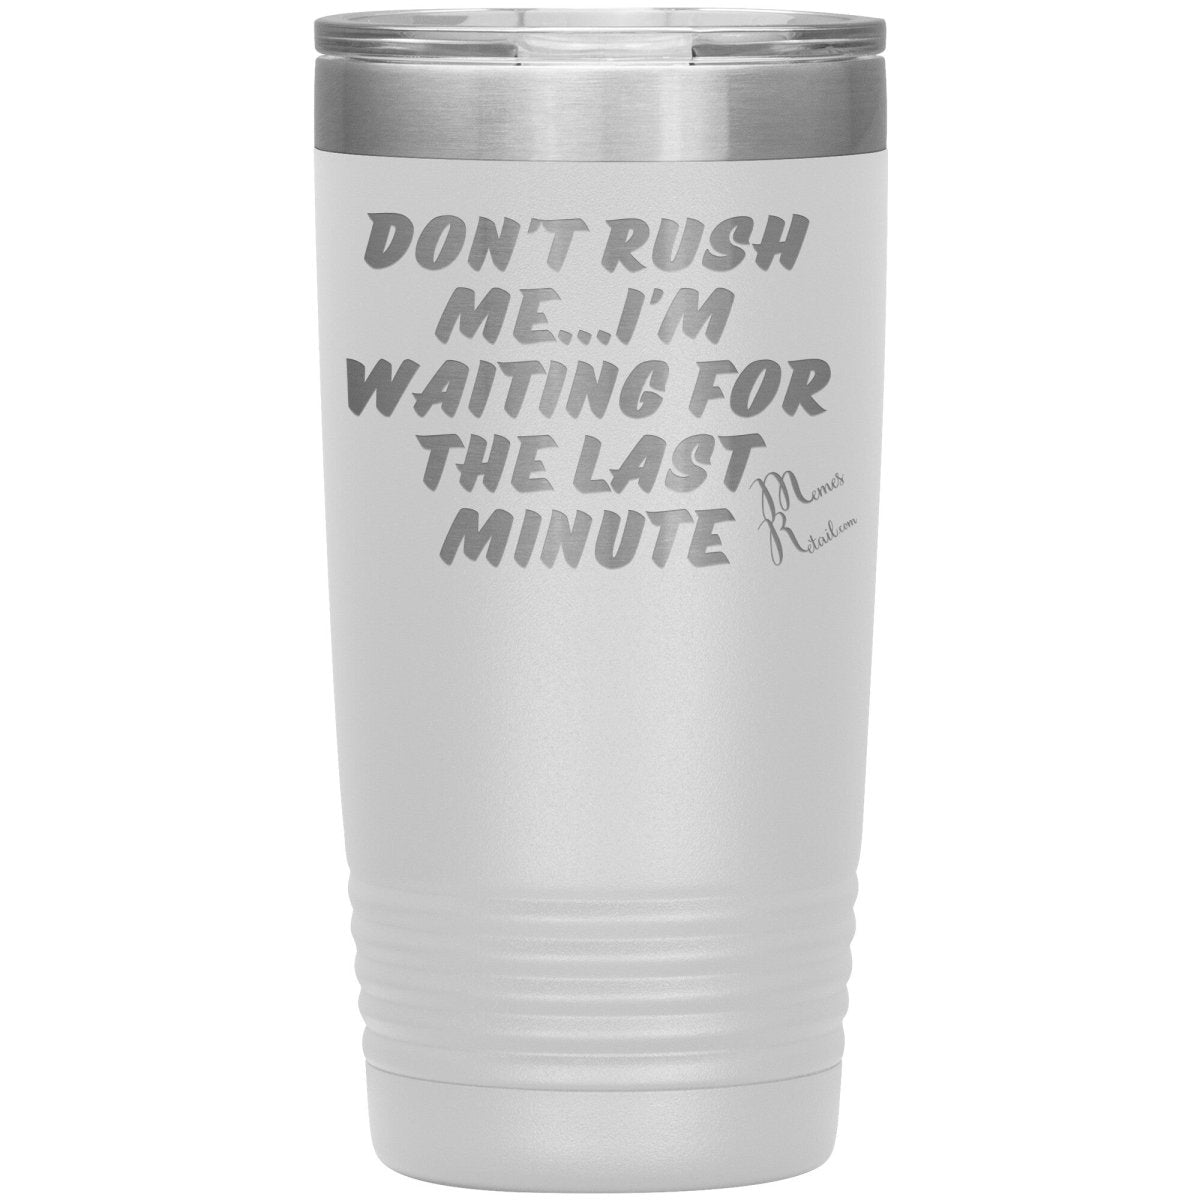 Don't Rush Me... I'm Waiting For The Last Minute Tumbers, 20oz Insulated Tumbler / White - MemesRetail.com